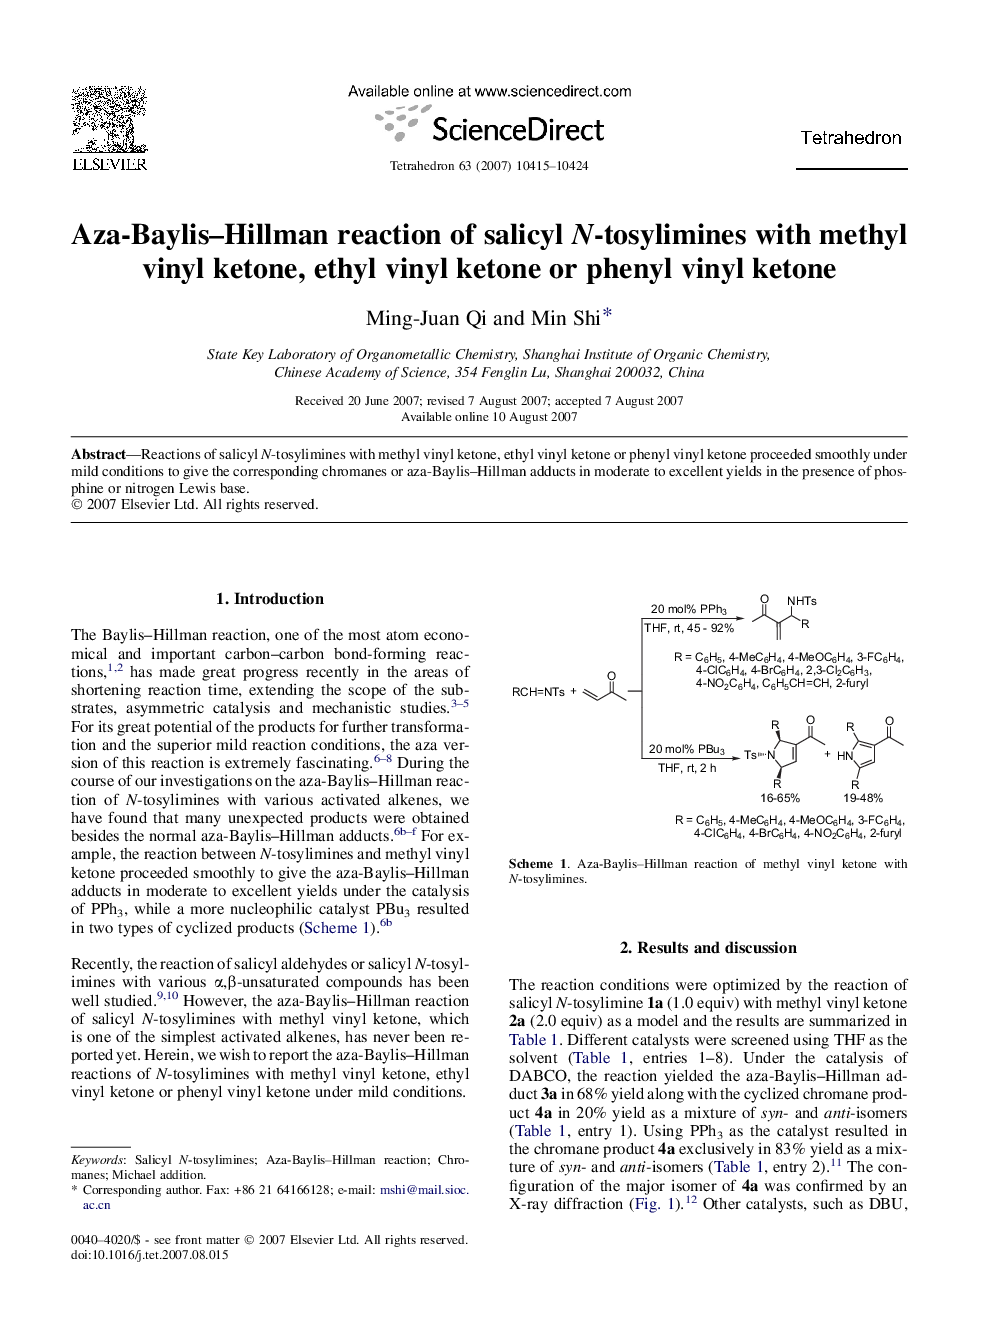 Aza-Baylis-Hillman reaction of salicyl N-tosylimines with methyl vinyl ketone, ethyl vinyl ketone or phenyl vinyl ketone